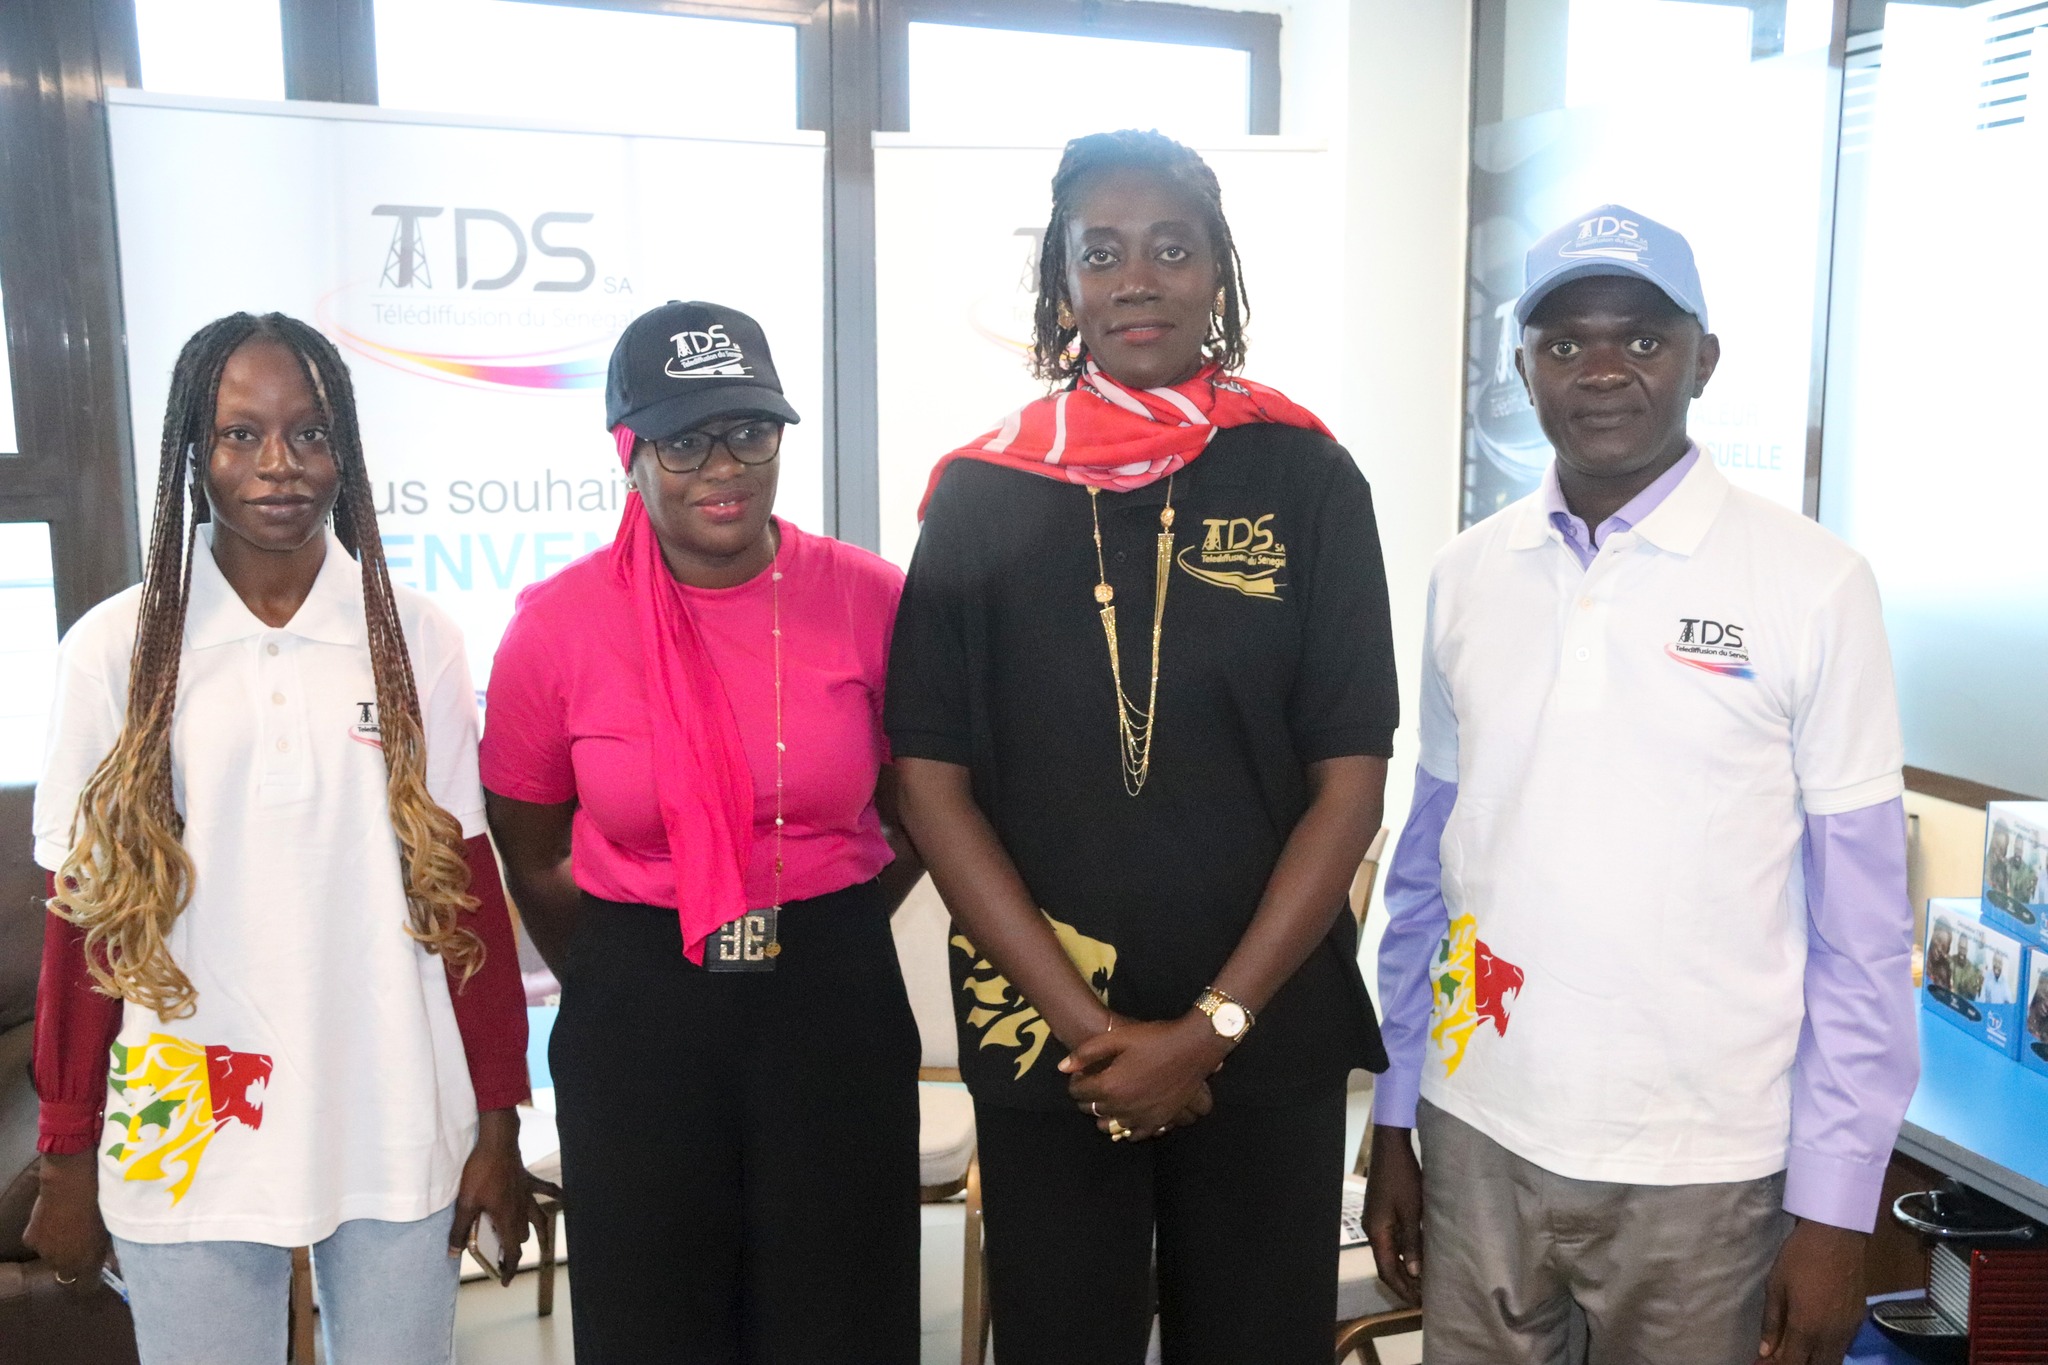 Télédiffusion du Sénégal – TDS : Remise des décodeurs TNT à nos heureux gagnants